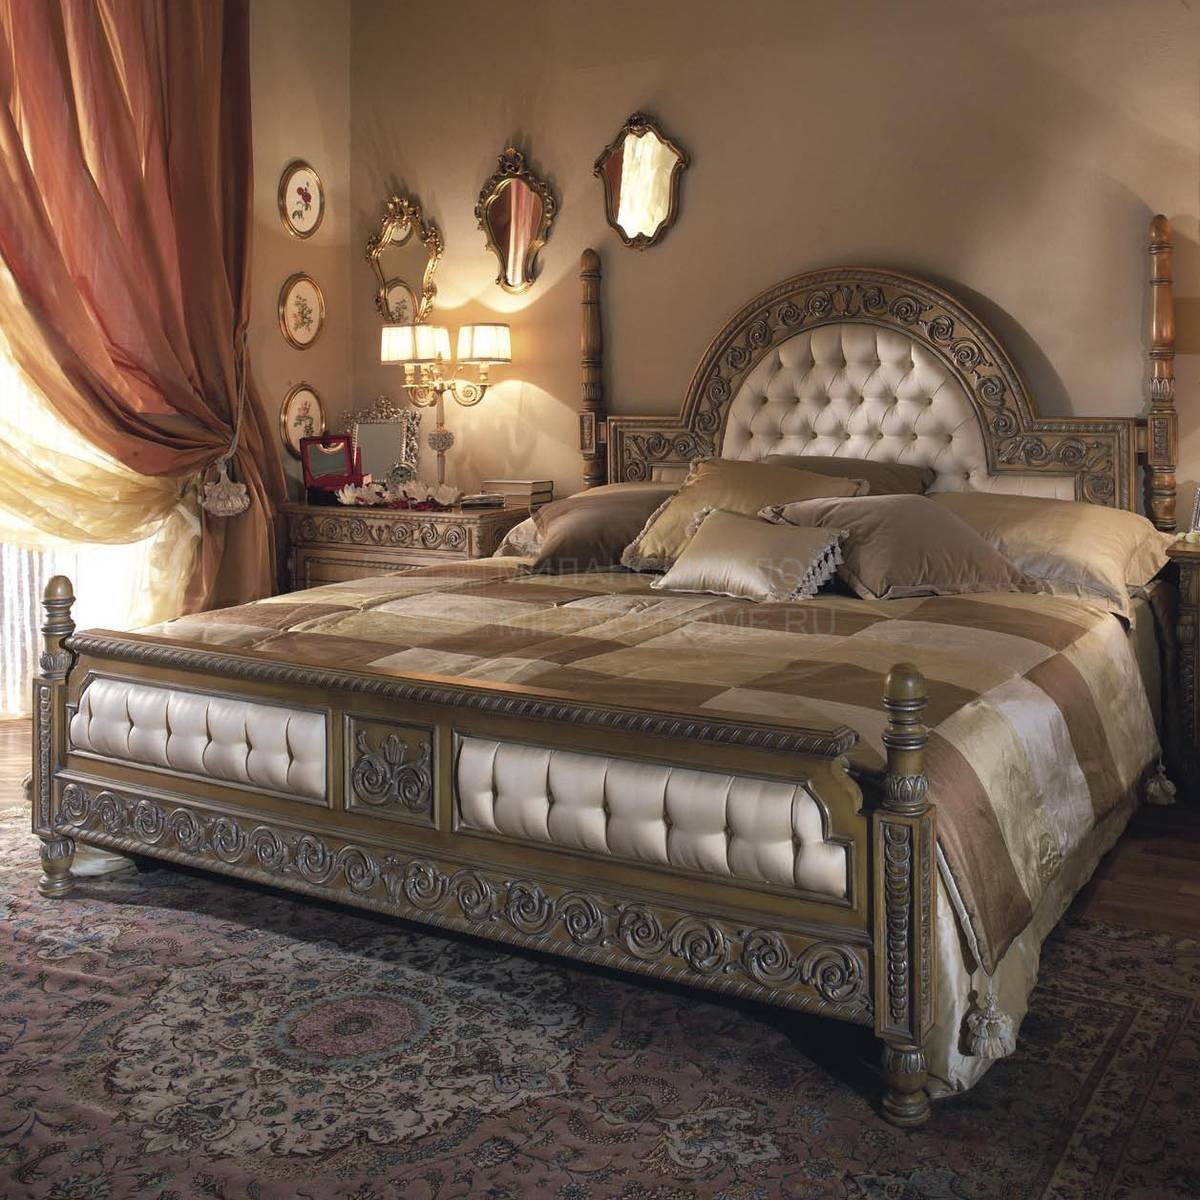 Двуспальная кровать PC 1211 Gretel/bed из Италии фабрики ASNAGHI INTERIORS